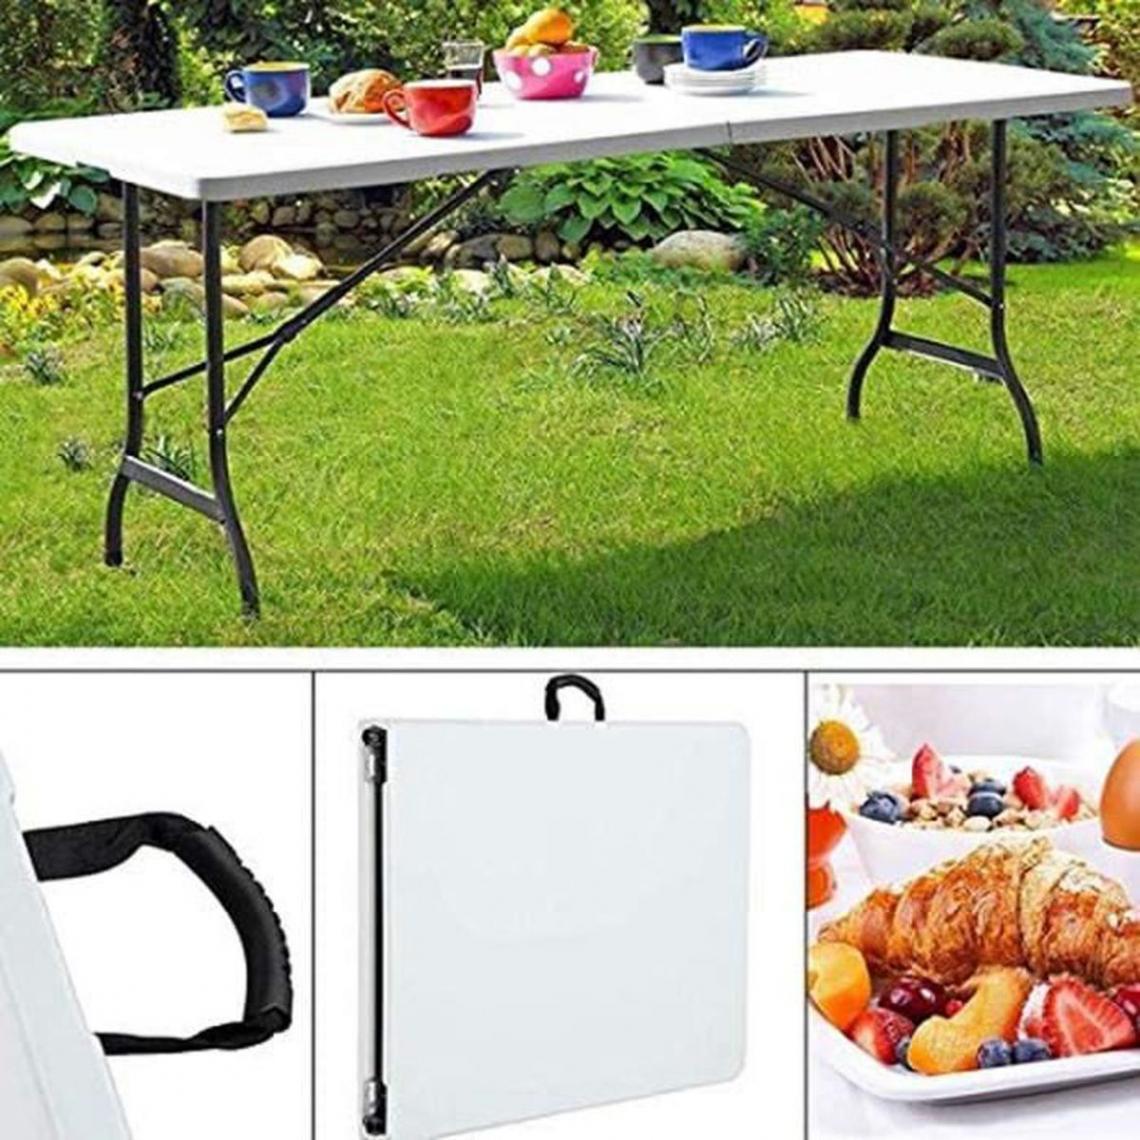 Wottes - 180 * 74cm Table Pliante - Table de Jardin - Table Exterieur - Haute Qualité - Blanc - Tables de jardin